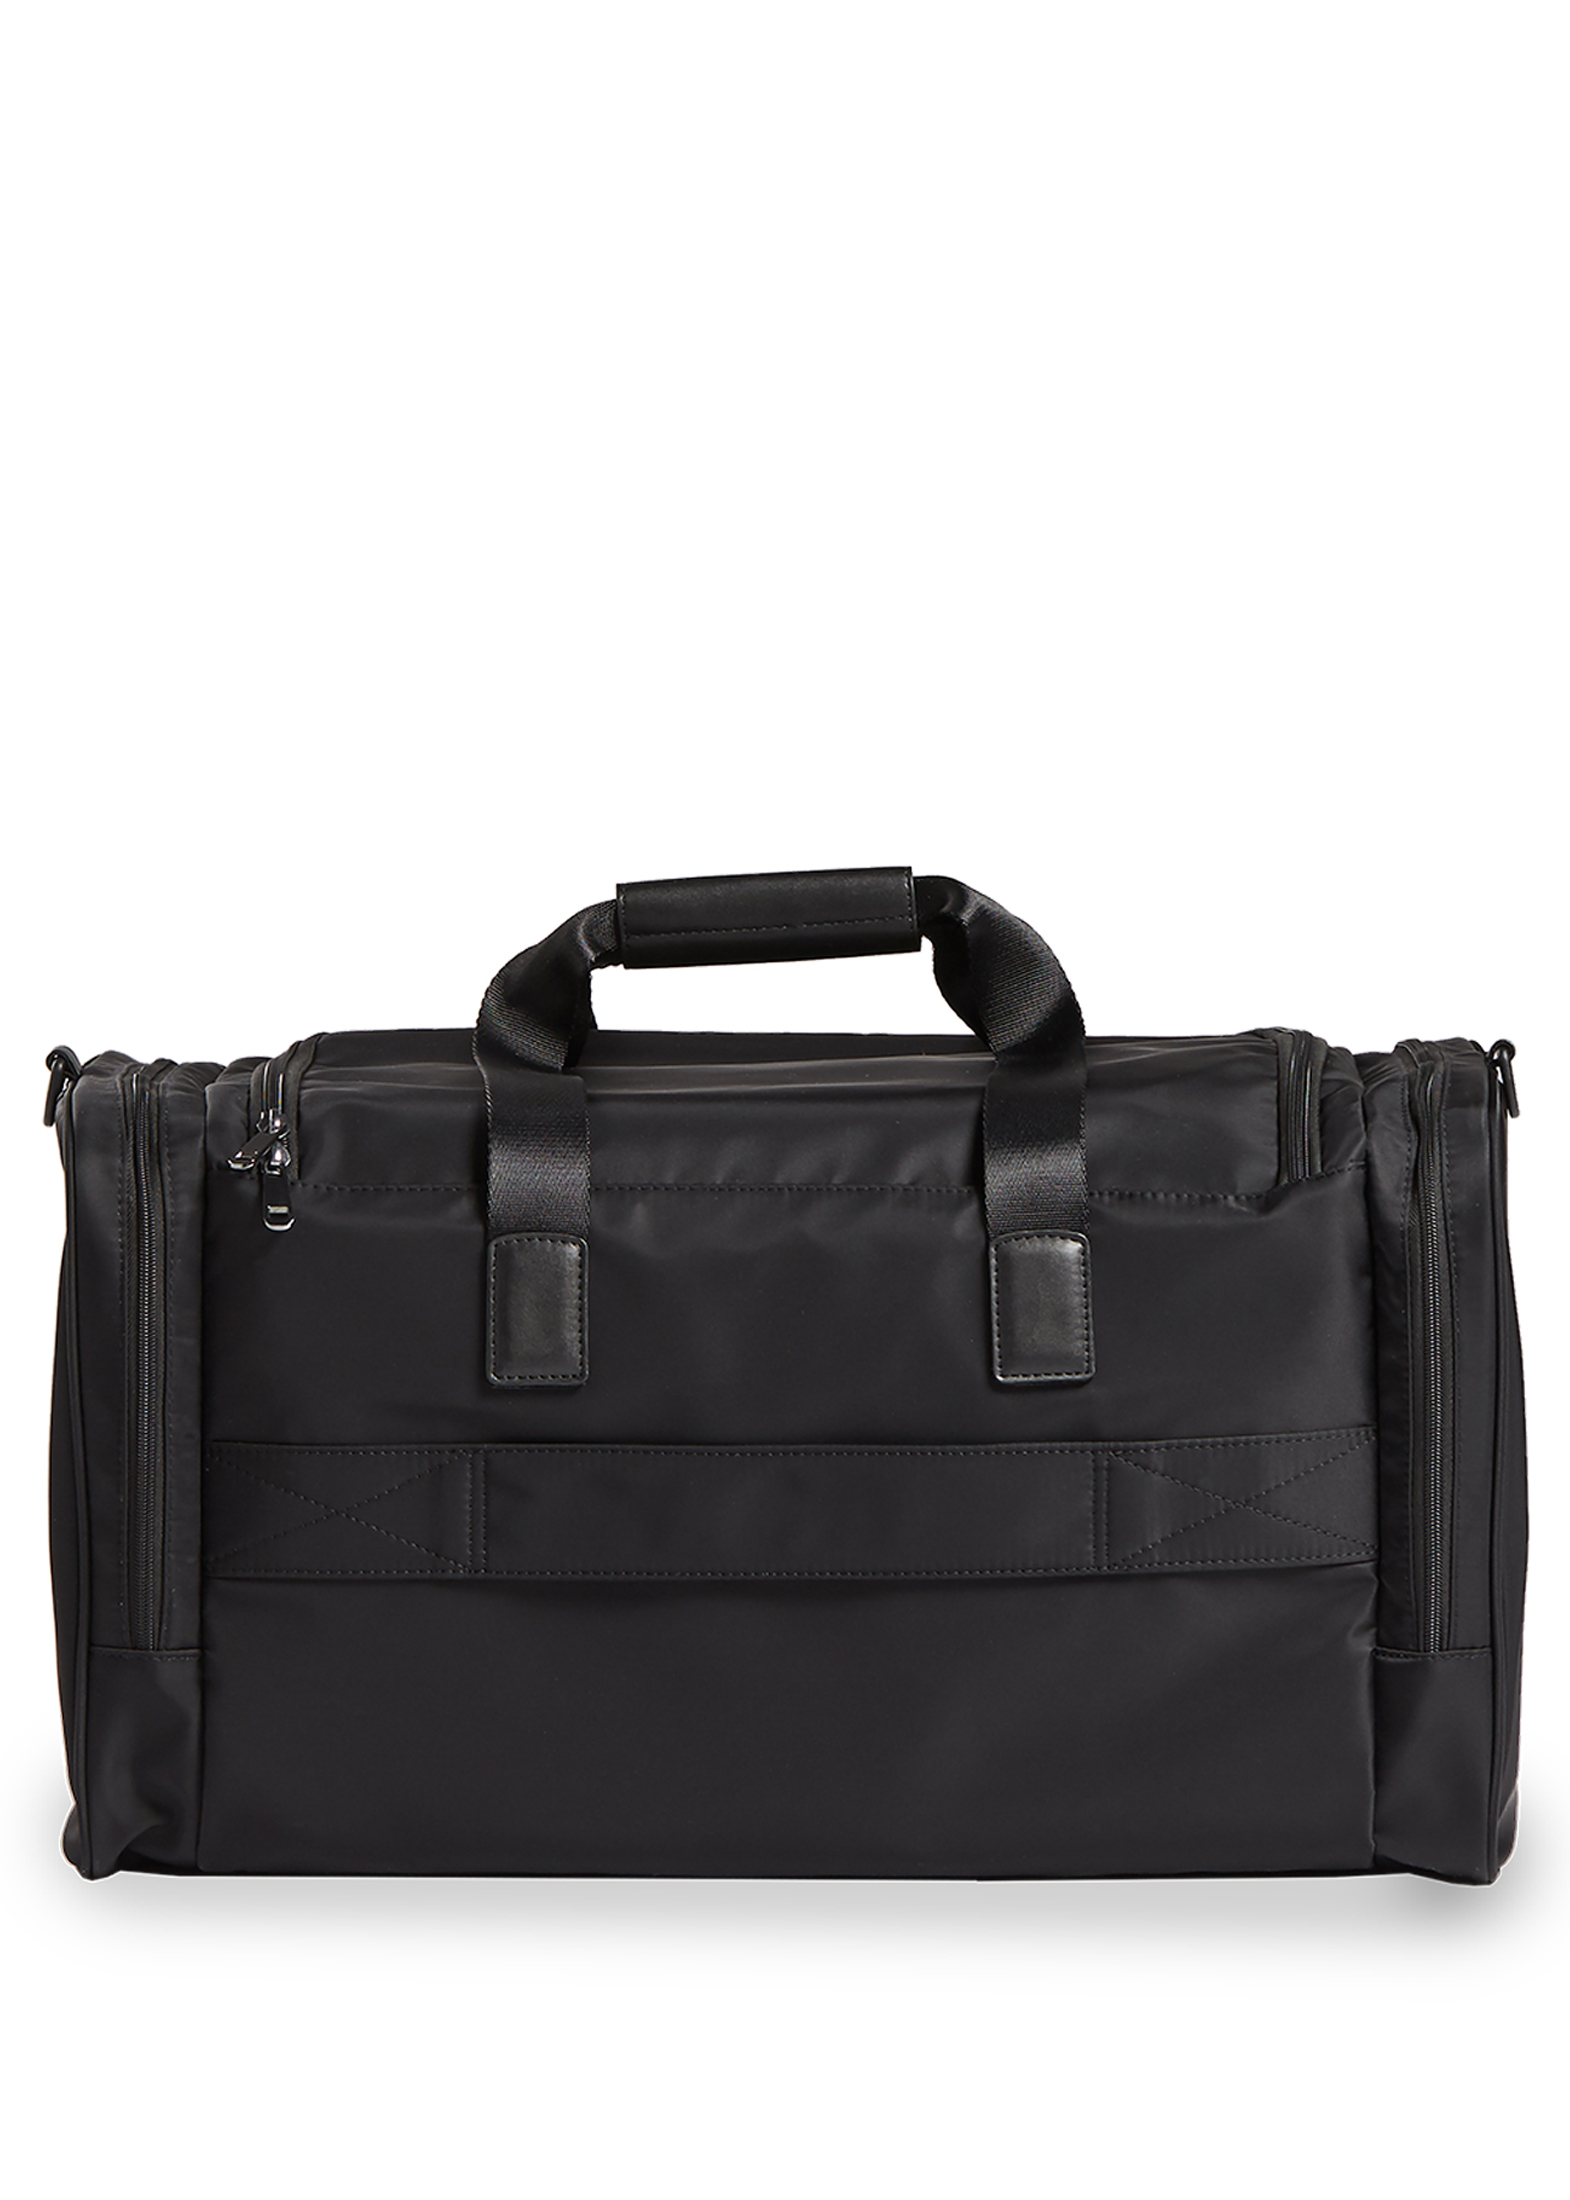 Travel bag -M- black image number 1